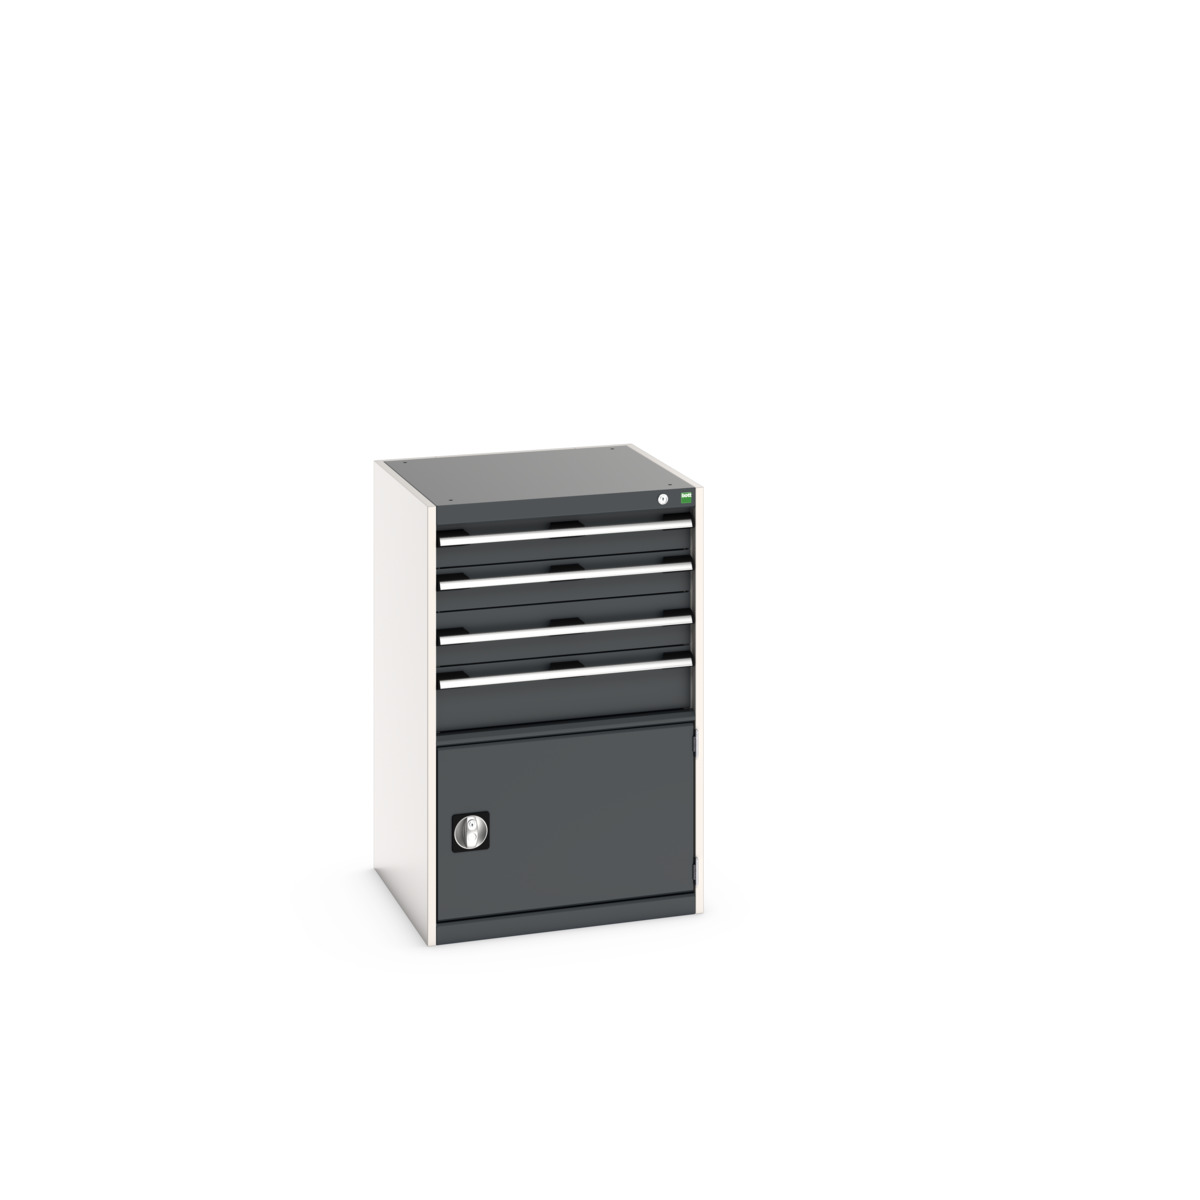 40019055. - cubio drawer-door cabinet